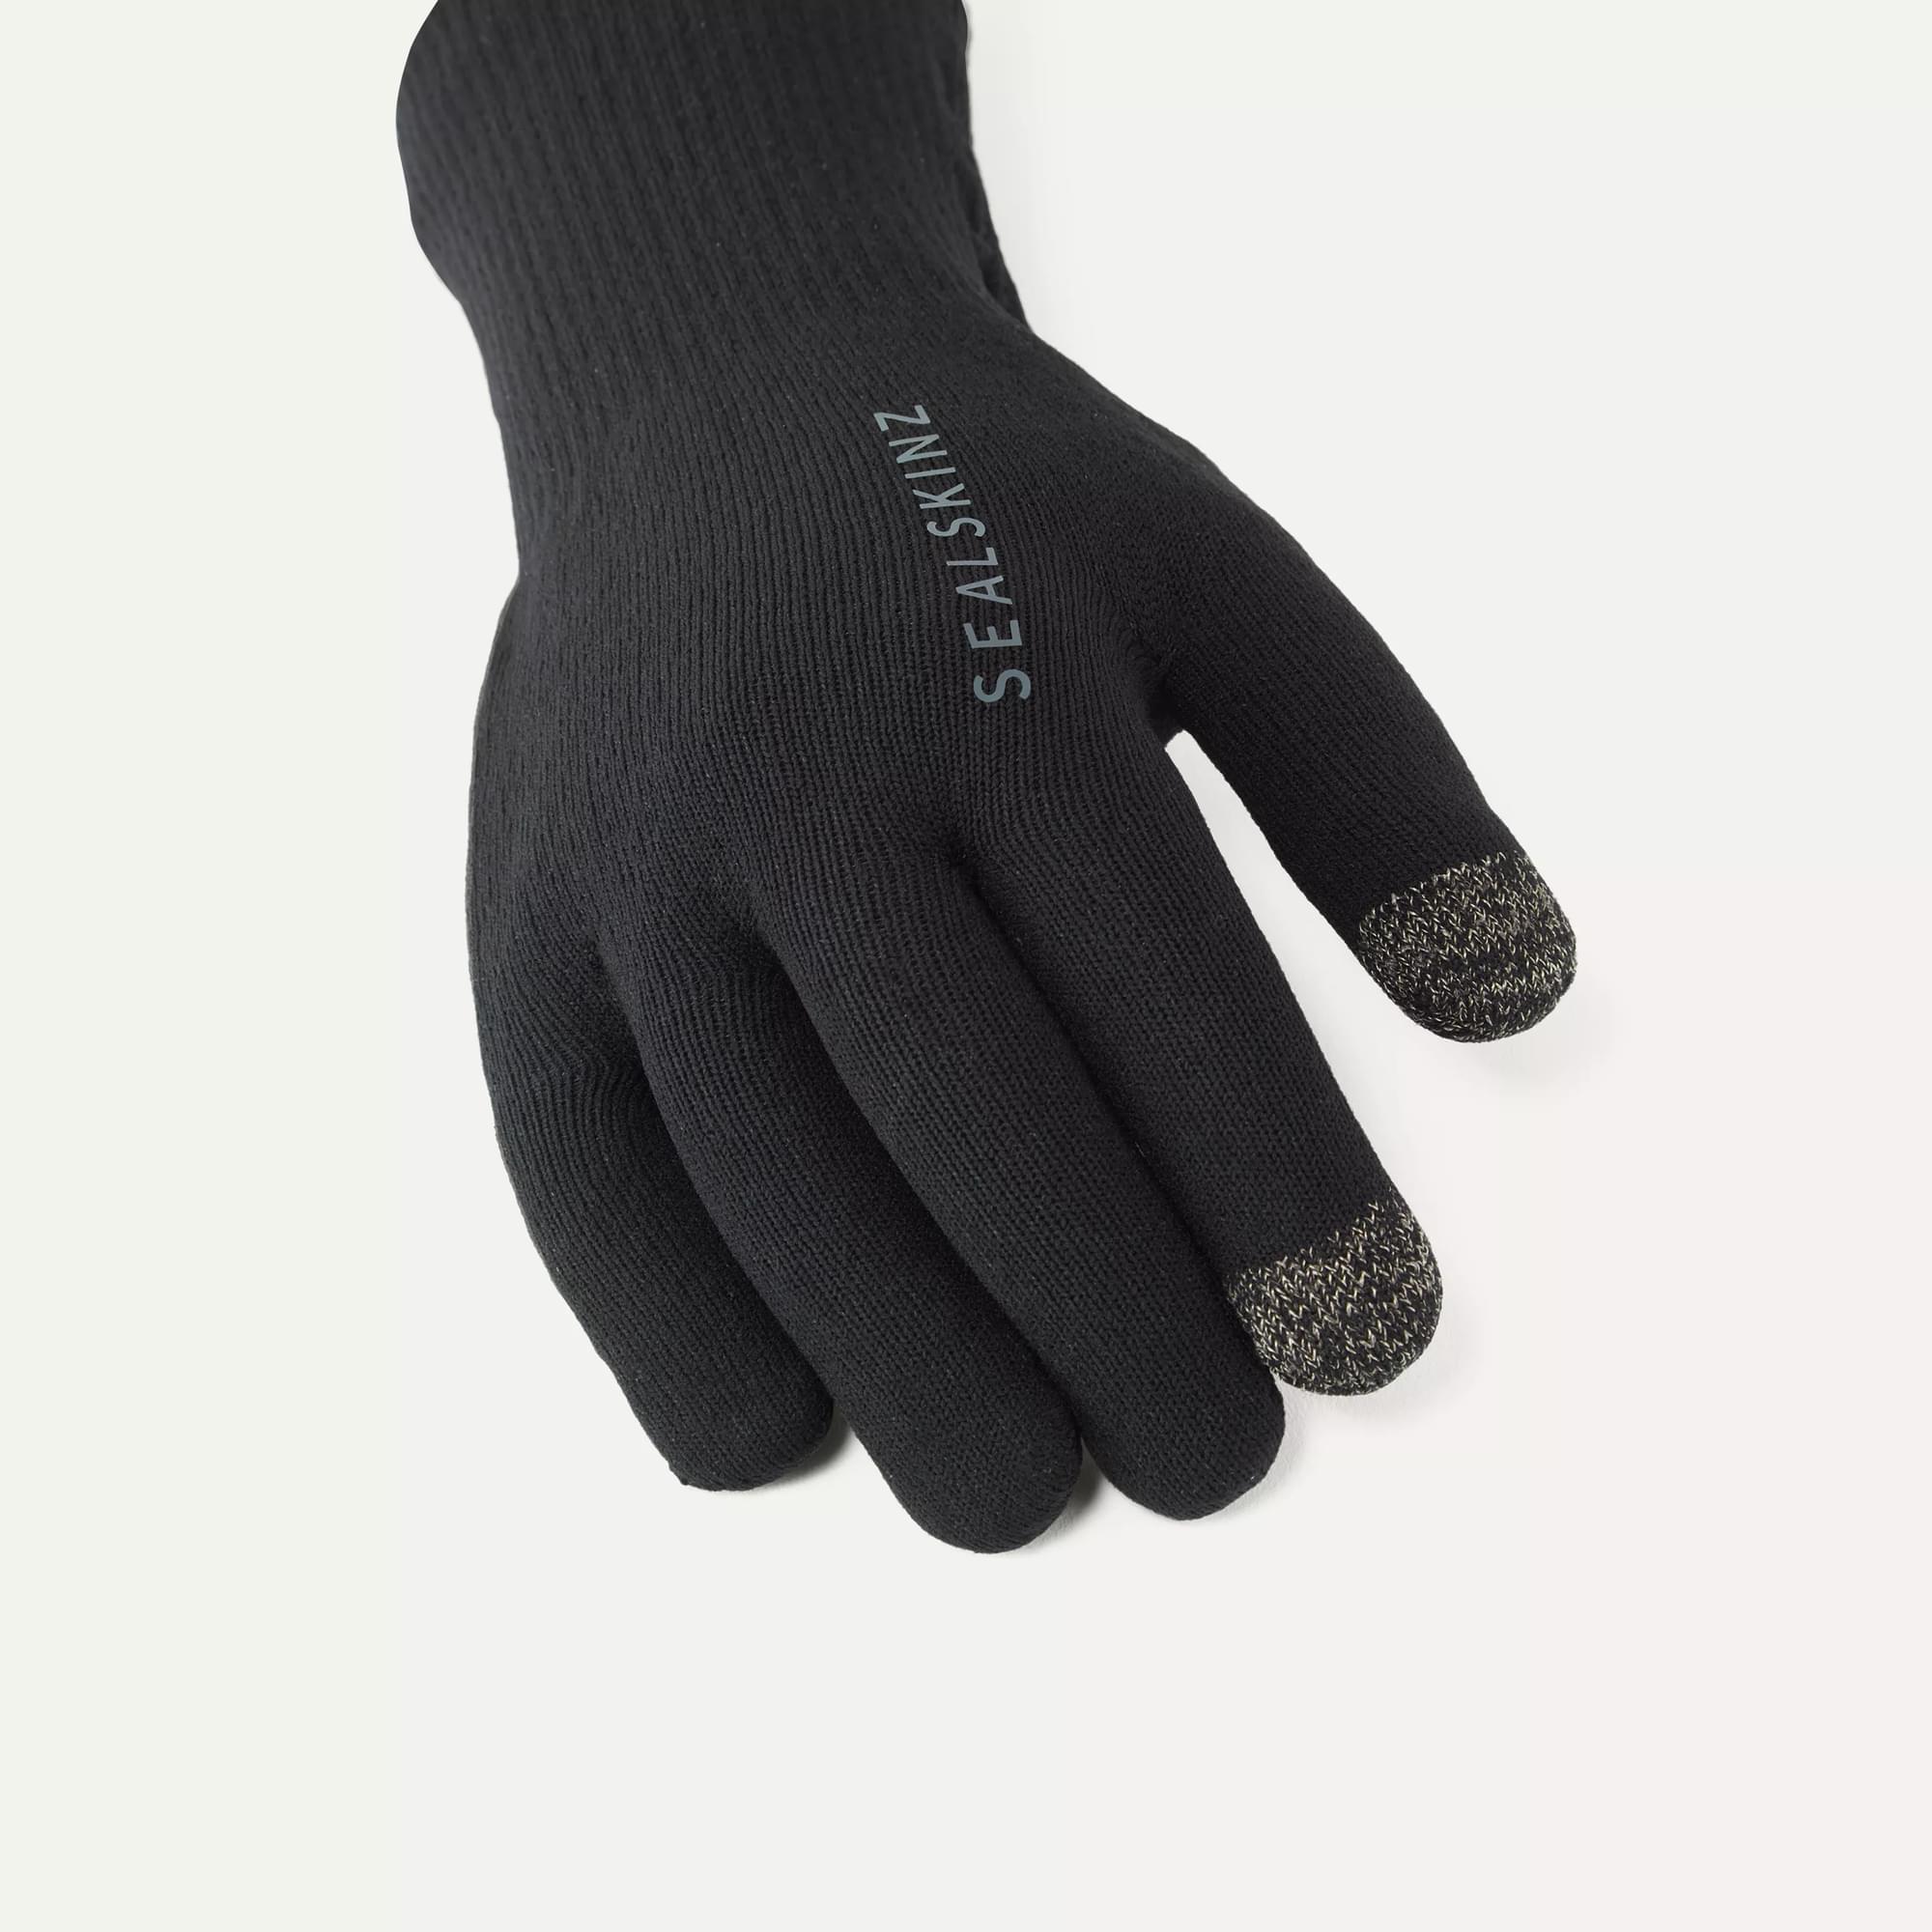  XSSM Bemmeful Gloves, Bemmeful Gloves Thermal, Warm Liner  Windproof Water Resistant Glove-Black